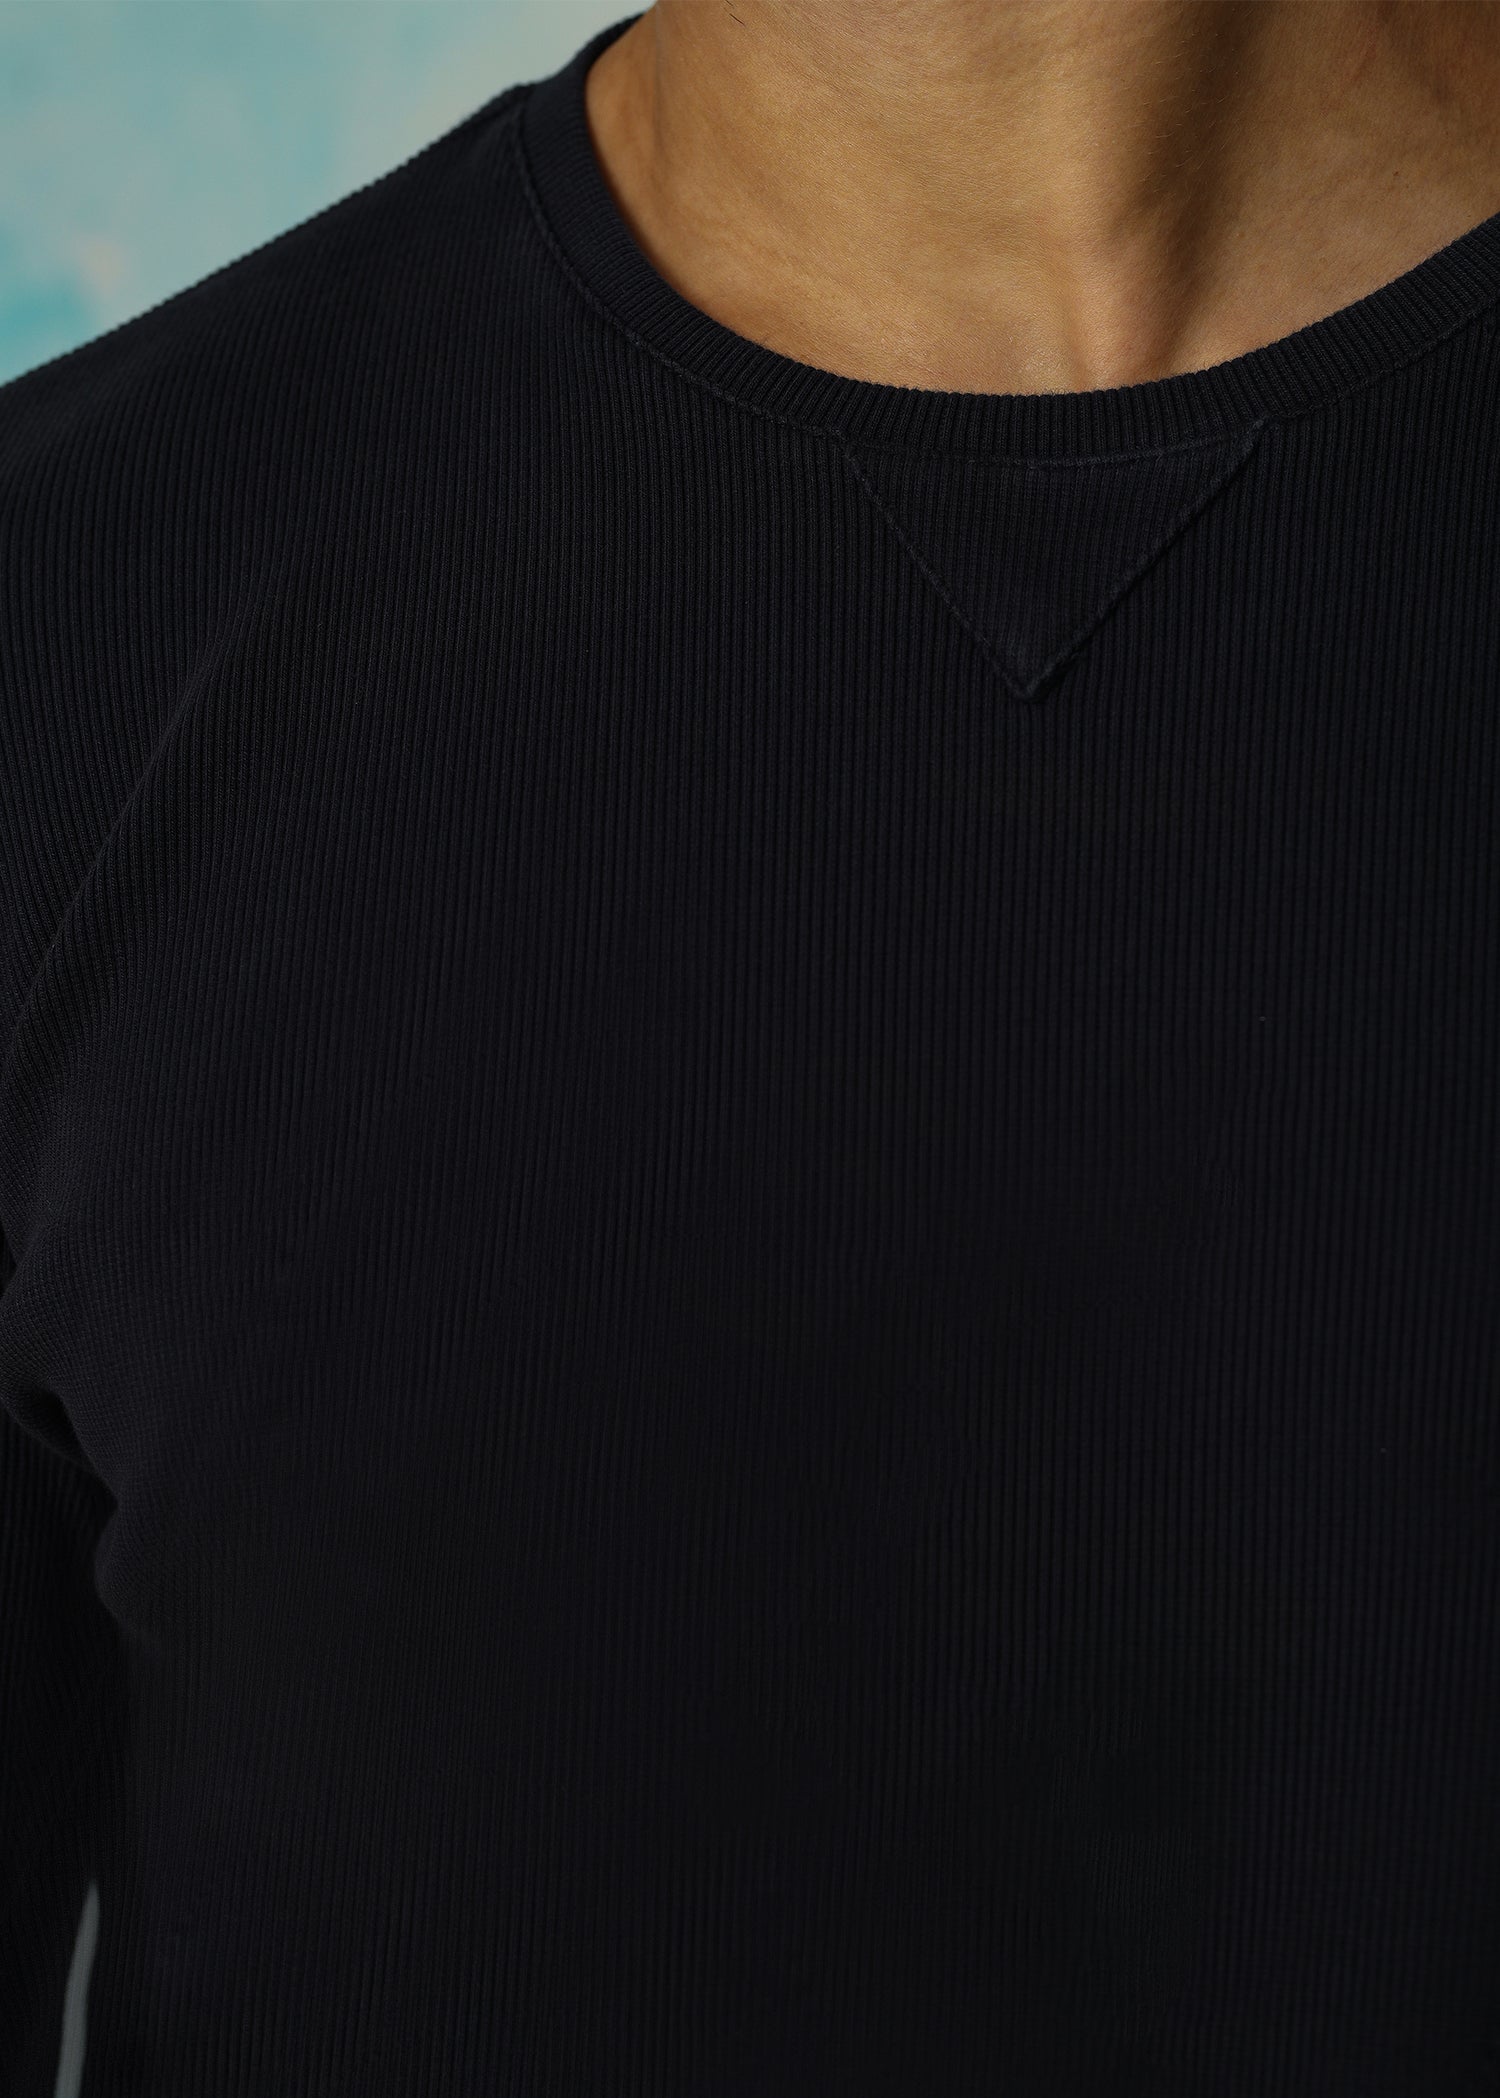 Sweatshirt L/S (Black)